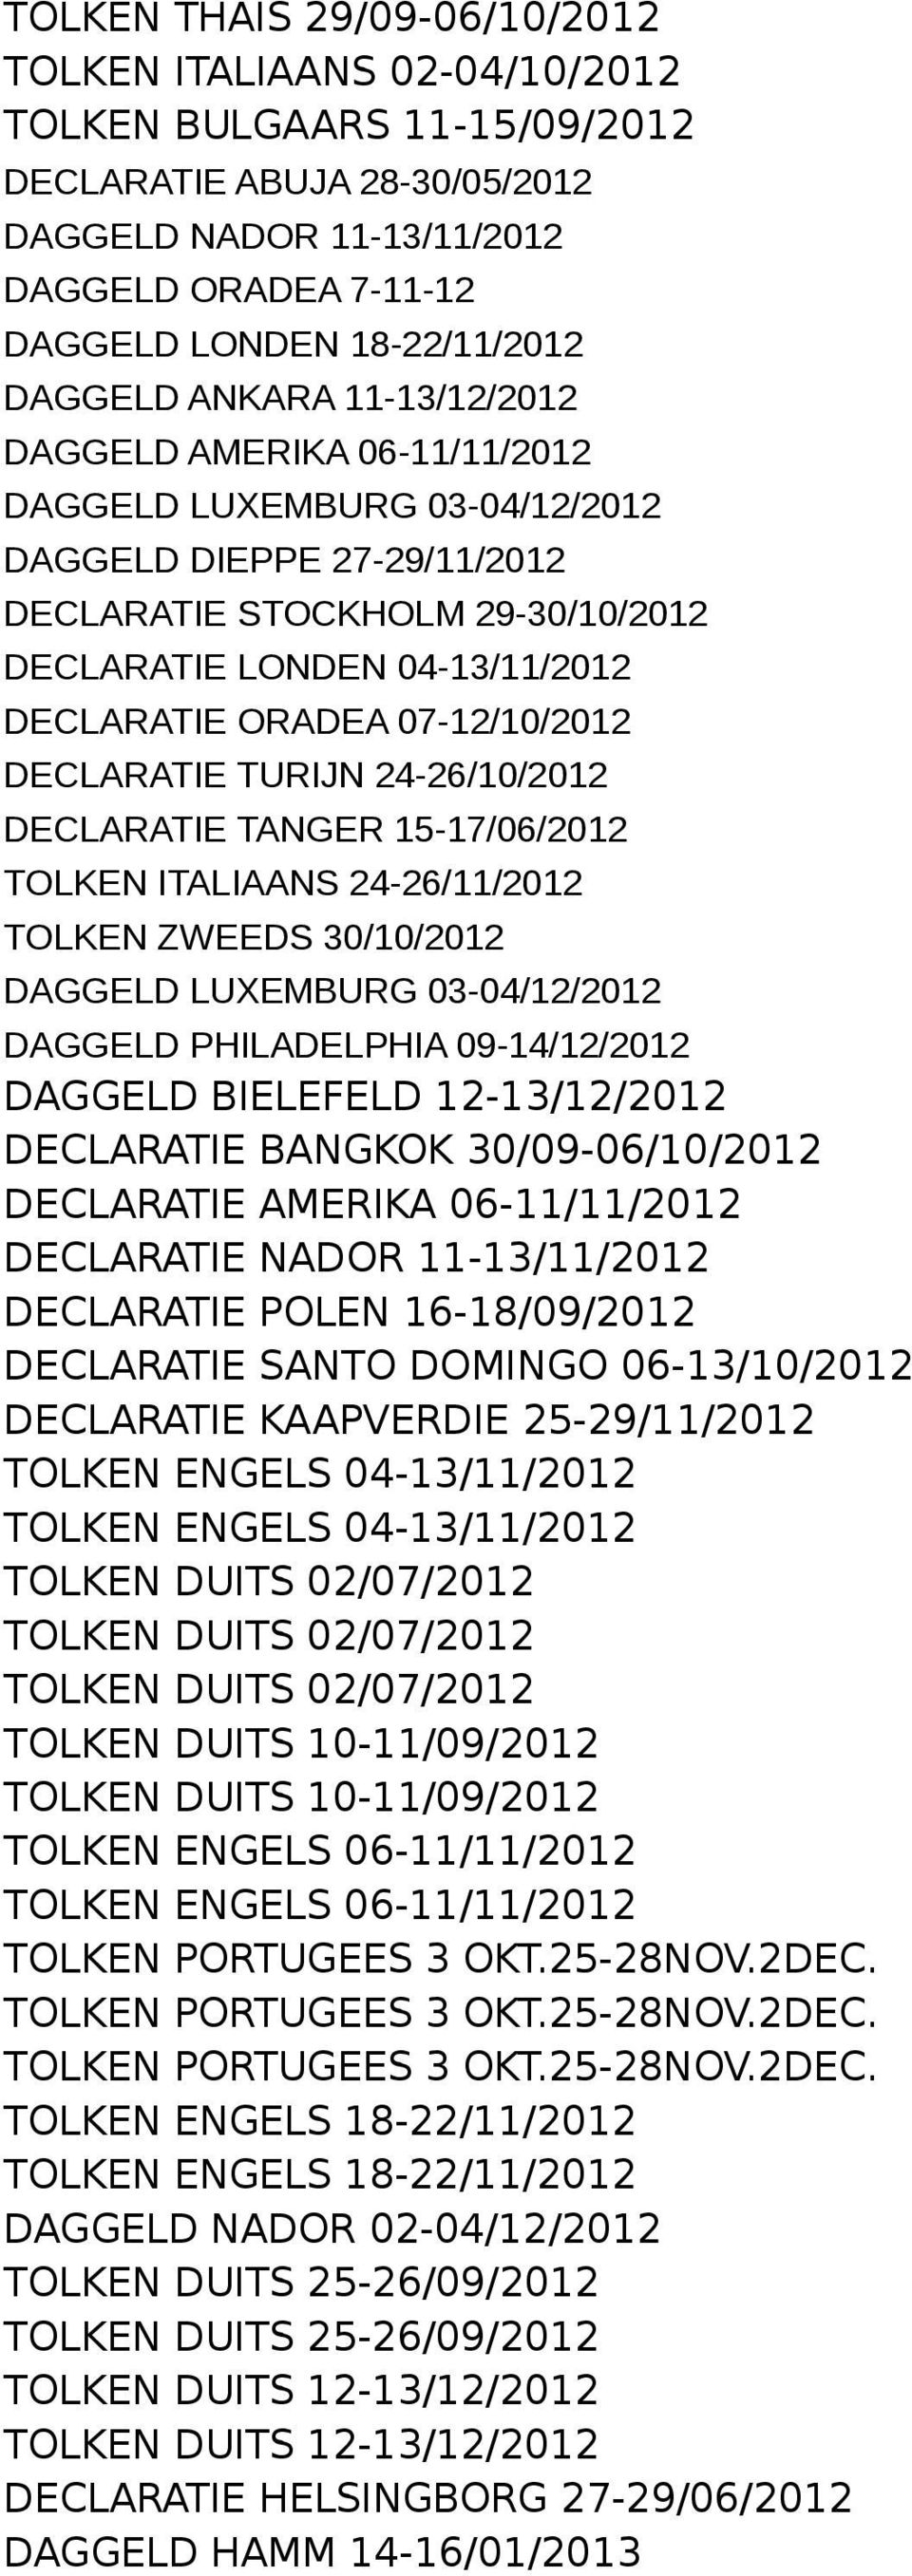 04-13/11/2012 DECLARATIE ORADEA 07-12/10/2012 DECLARATIE TURIJN 24-26/10/2012 DECLARATIE TANGER 15-17/06/2012 TOLKEN ITALIAANS 24-26/11/2012 TOLKEN ZWEEDS 30/10/2012 DAGGELD LUXEMBURG 03-04/12/2012